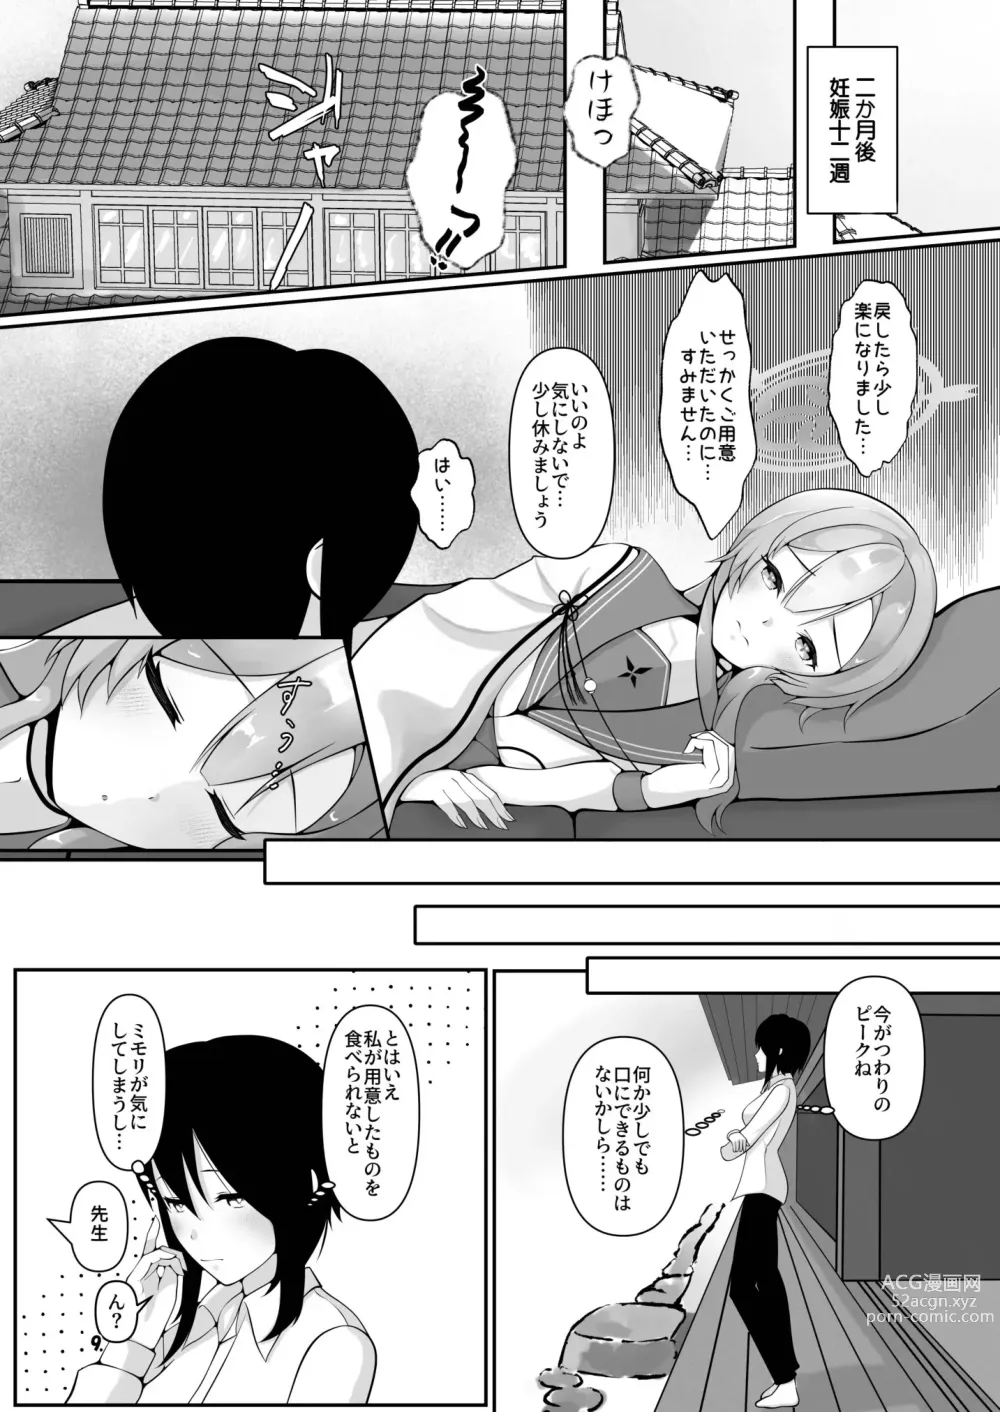 Page 9 of doujinshi Mimori, Haha no Michi o Ayumu.